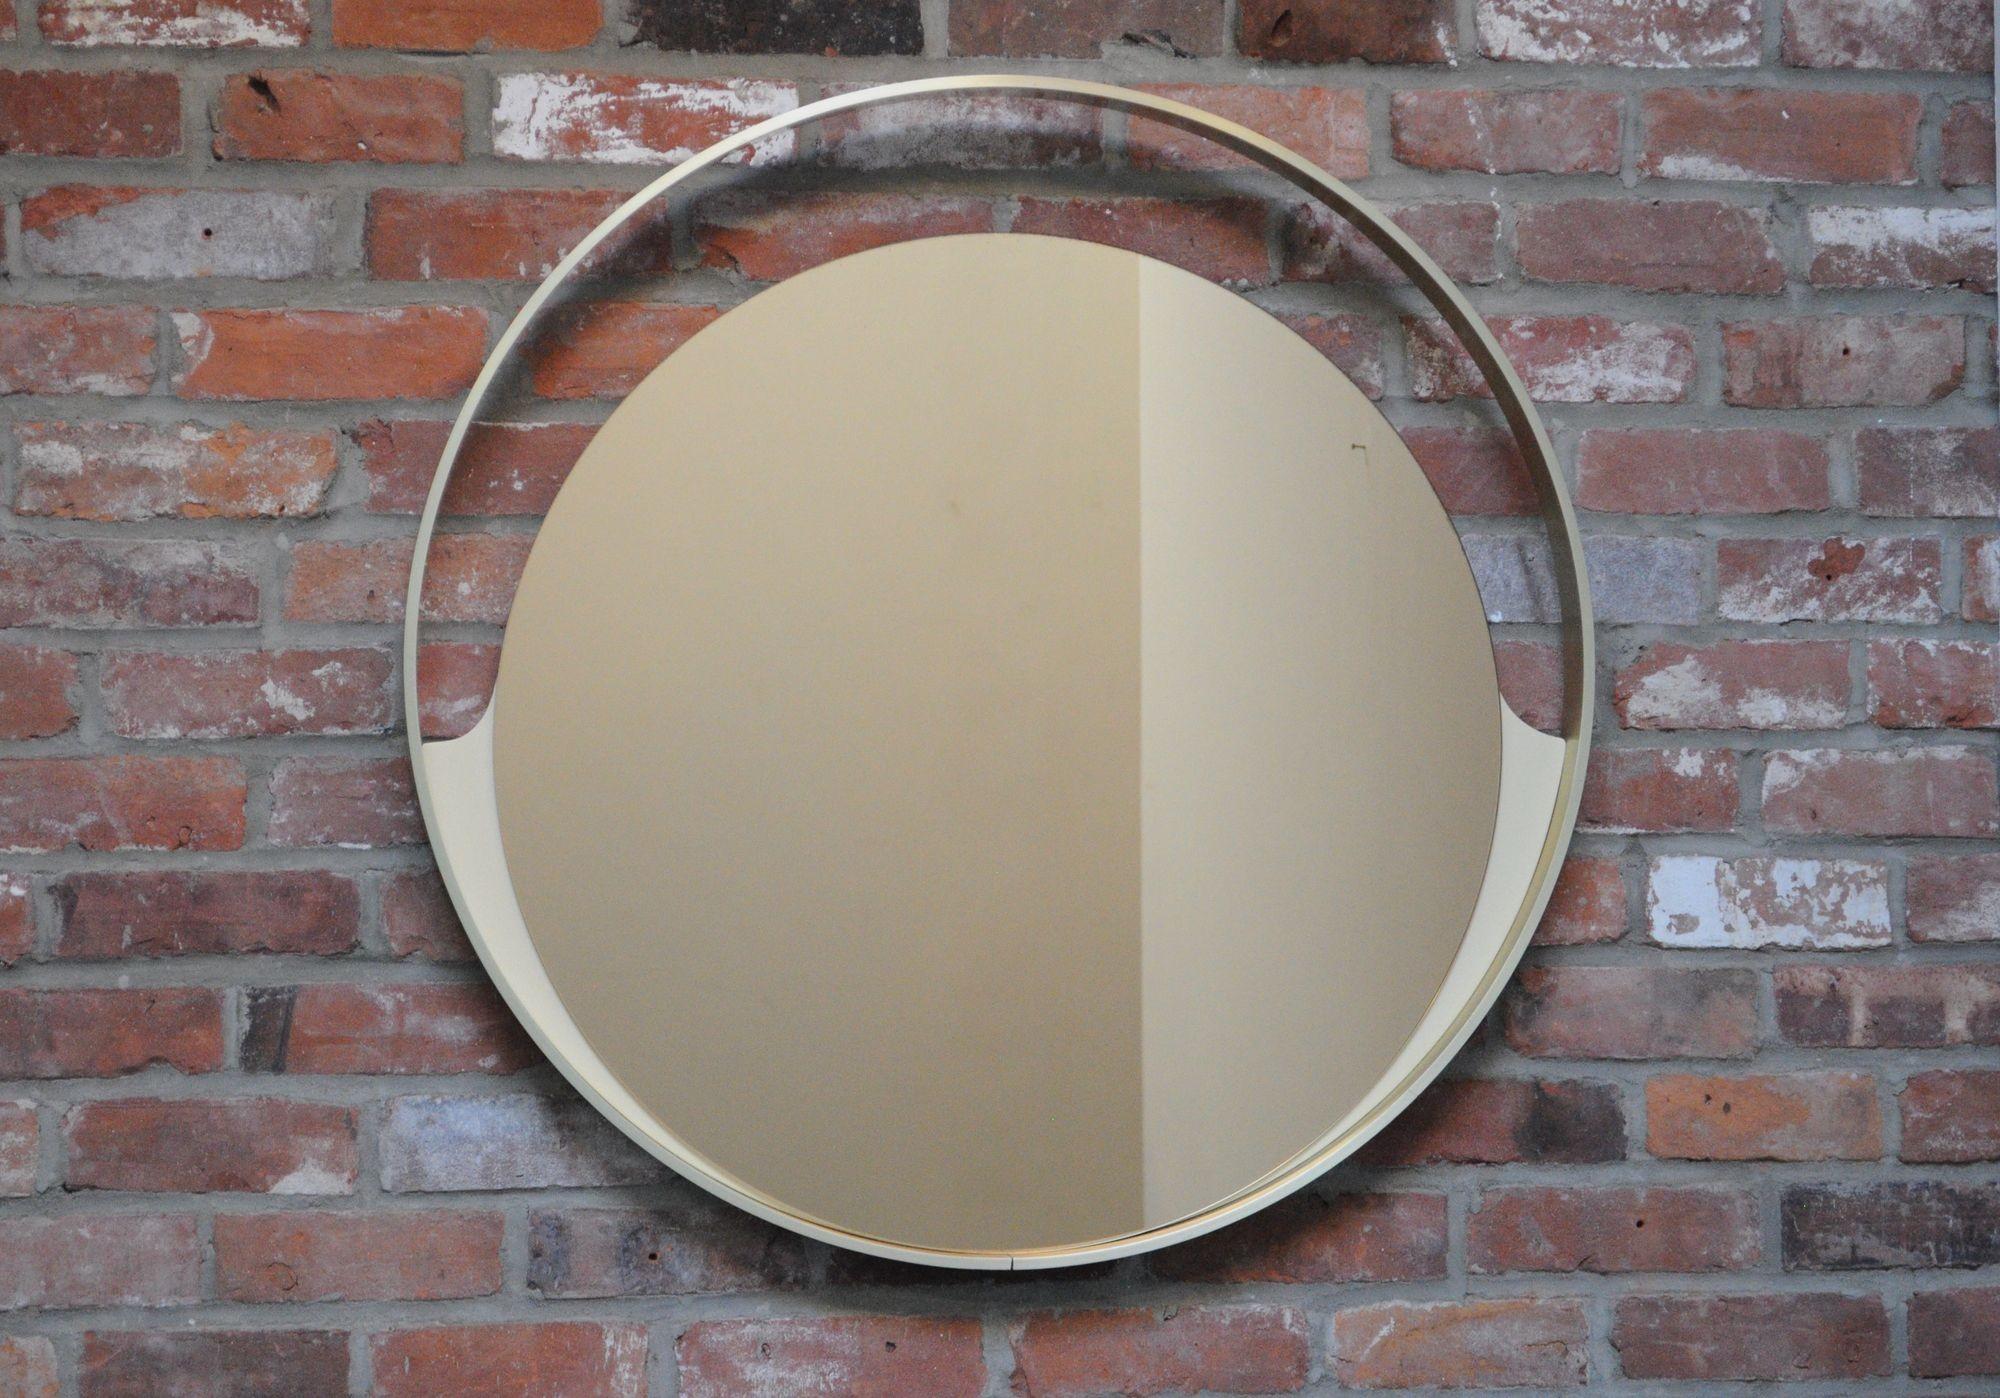 Miroir mural Rimadesio composé d'un cadre en aluminium anodisé doré avec des accents de bois laqué crème/ivoire supportant une plaque de verre miroir au mercure teinté bronze (Desio, Italie, vers les années 1960).
Extrêmement bien fabriqué, il